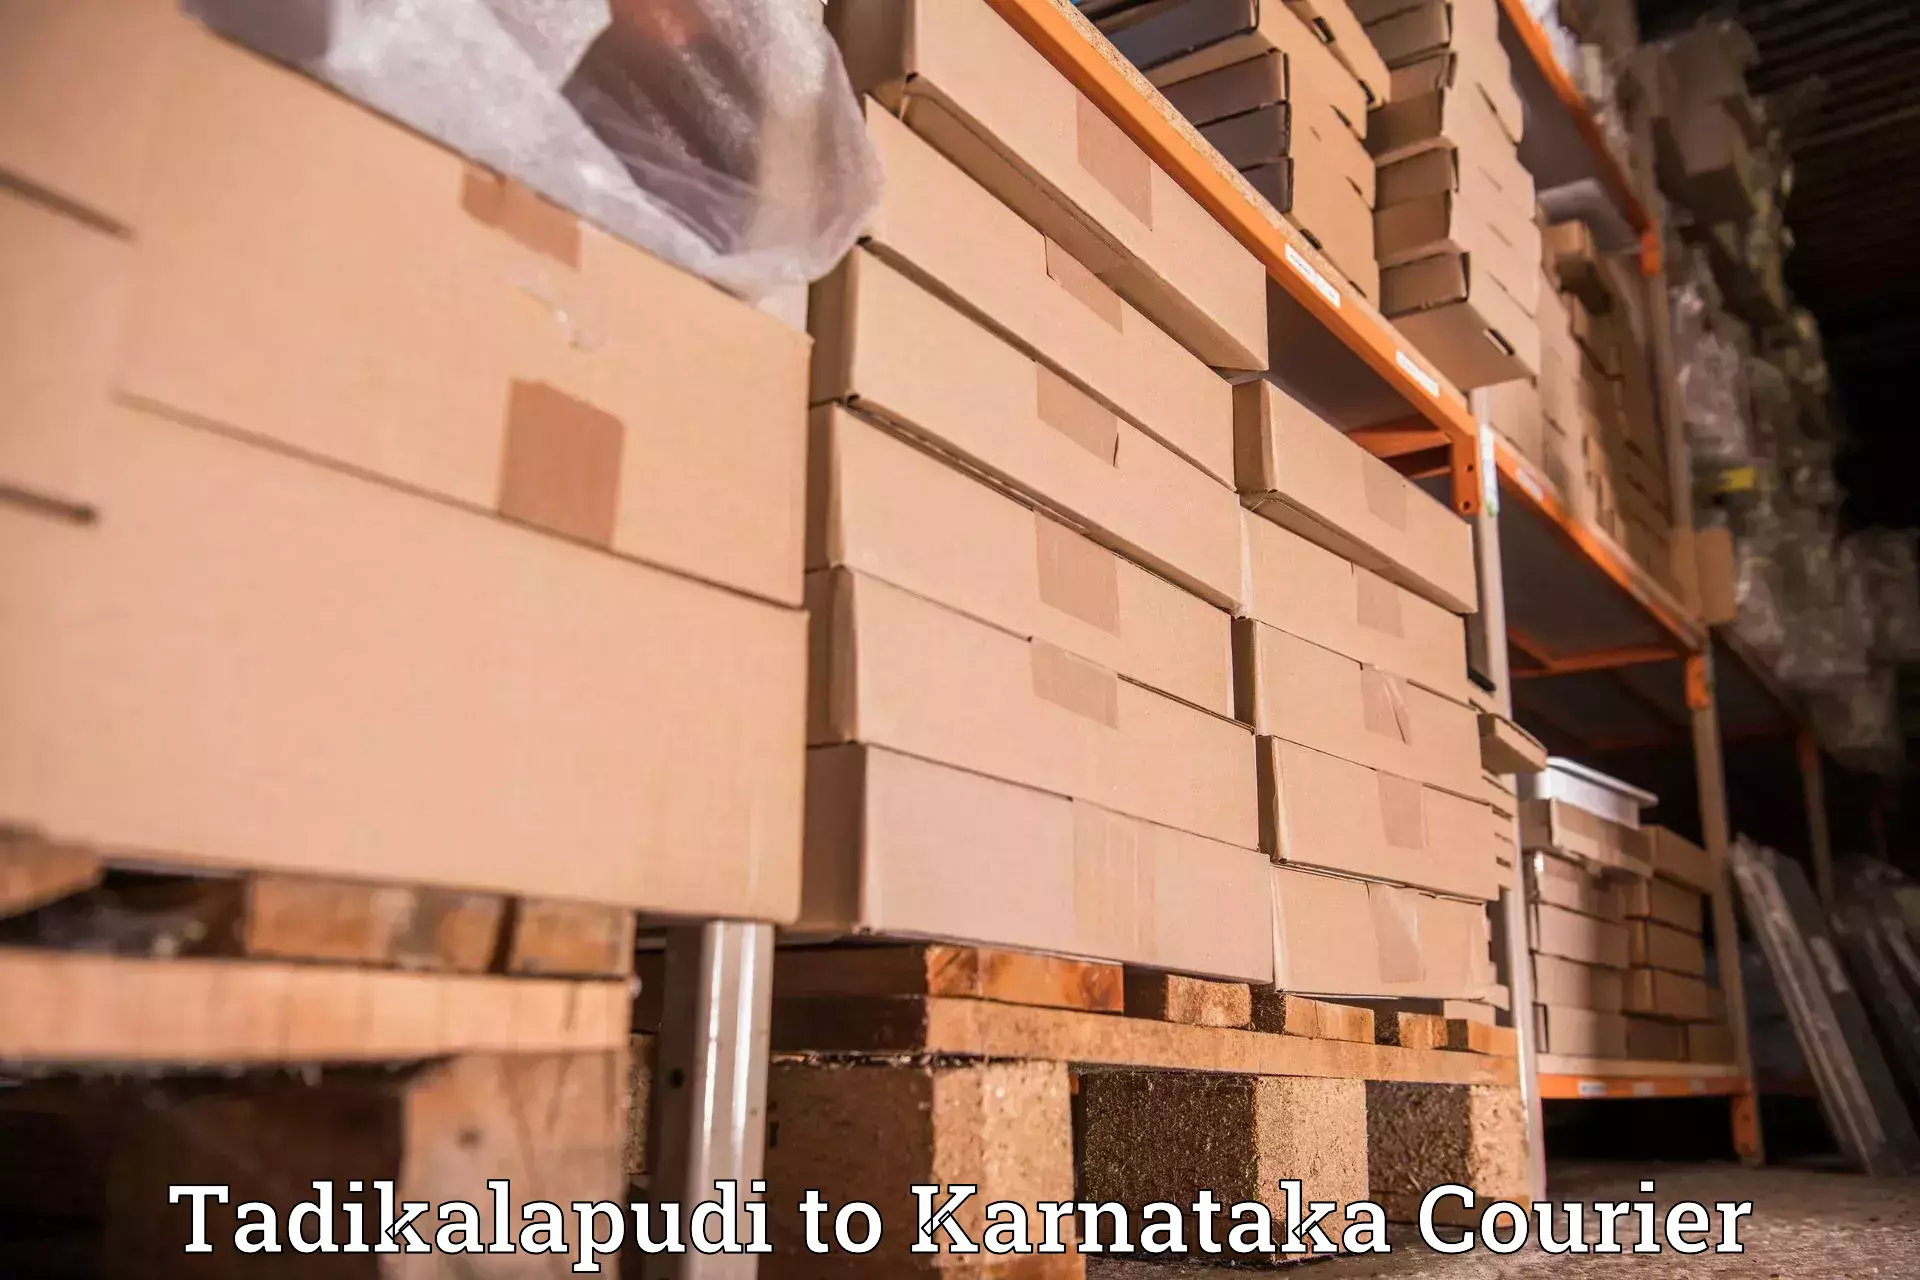 Reliable shipping partners Tadikalapudi to Belthangady